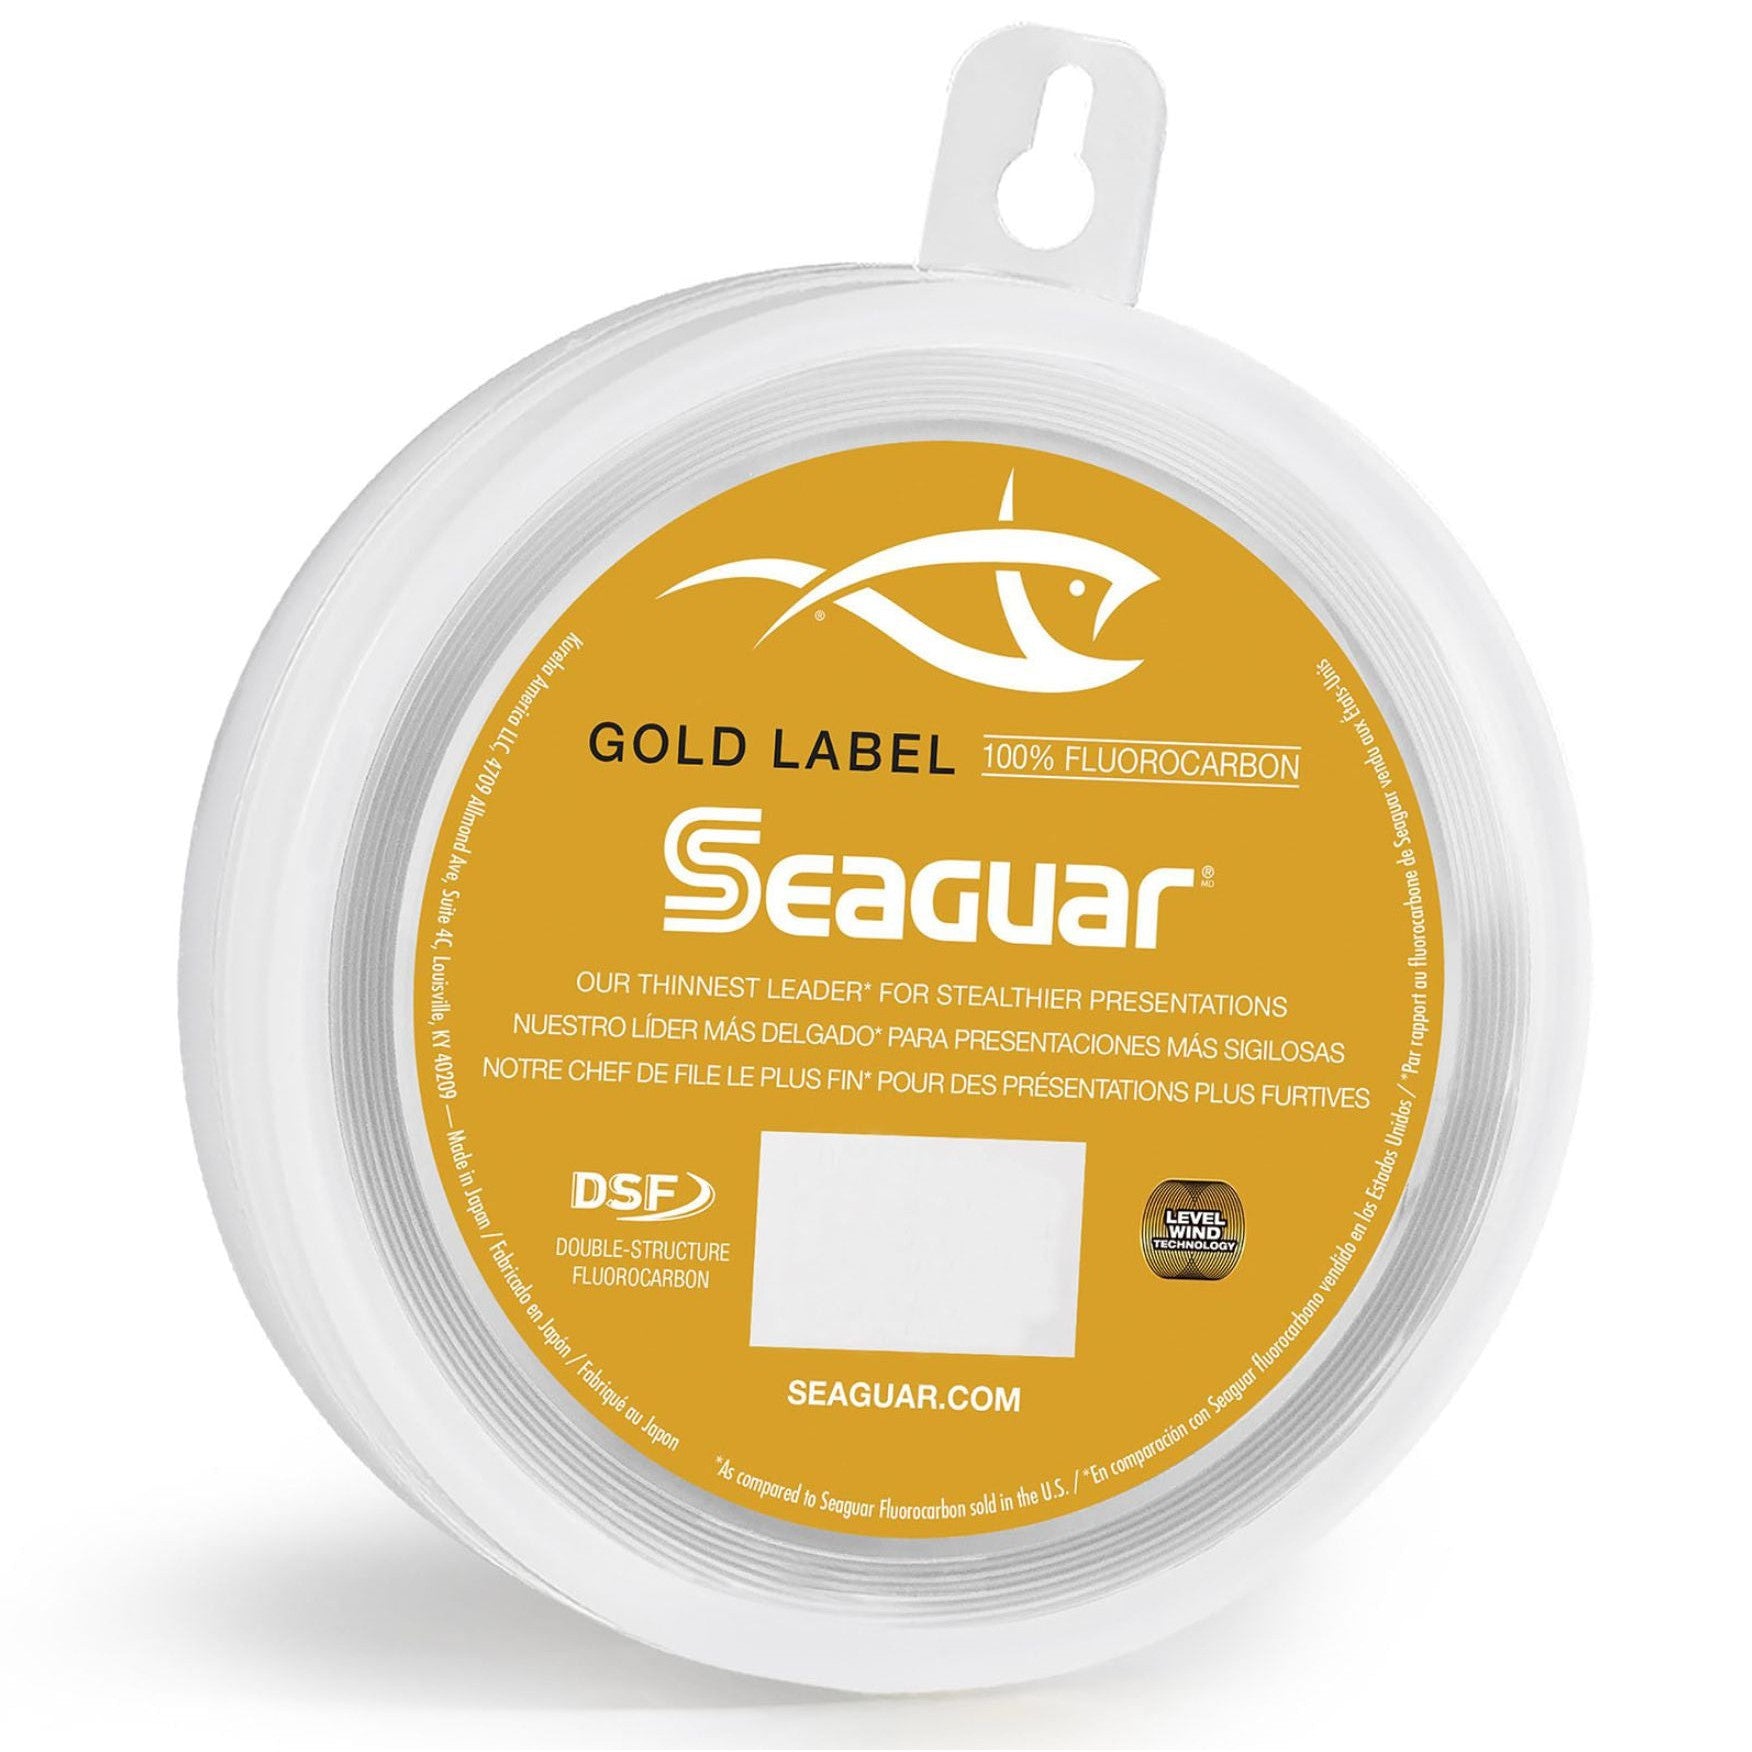 Seaguar Gold Label Fluorocarbon Leader 25 Yards